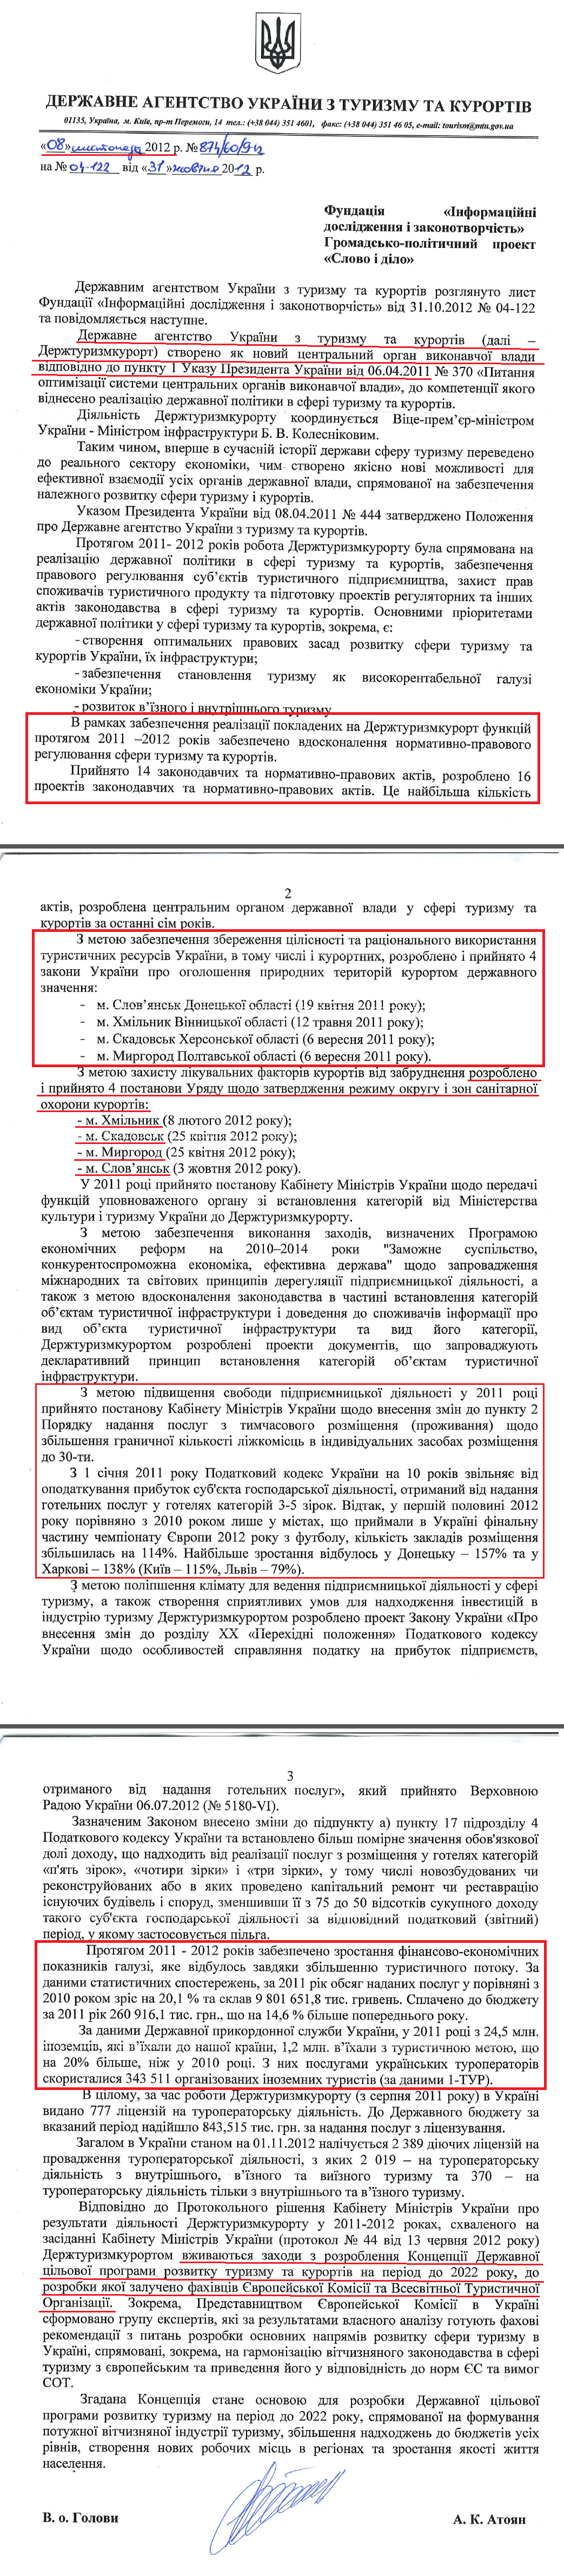 Лист В.о. Голови Державного агентства України з туризму та курортів А.К.Атояна від 8 листопада 2012 року